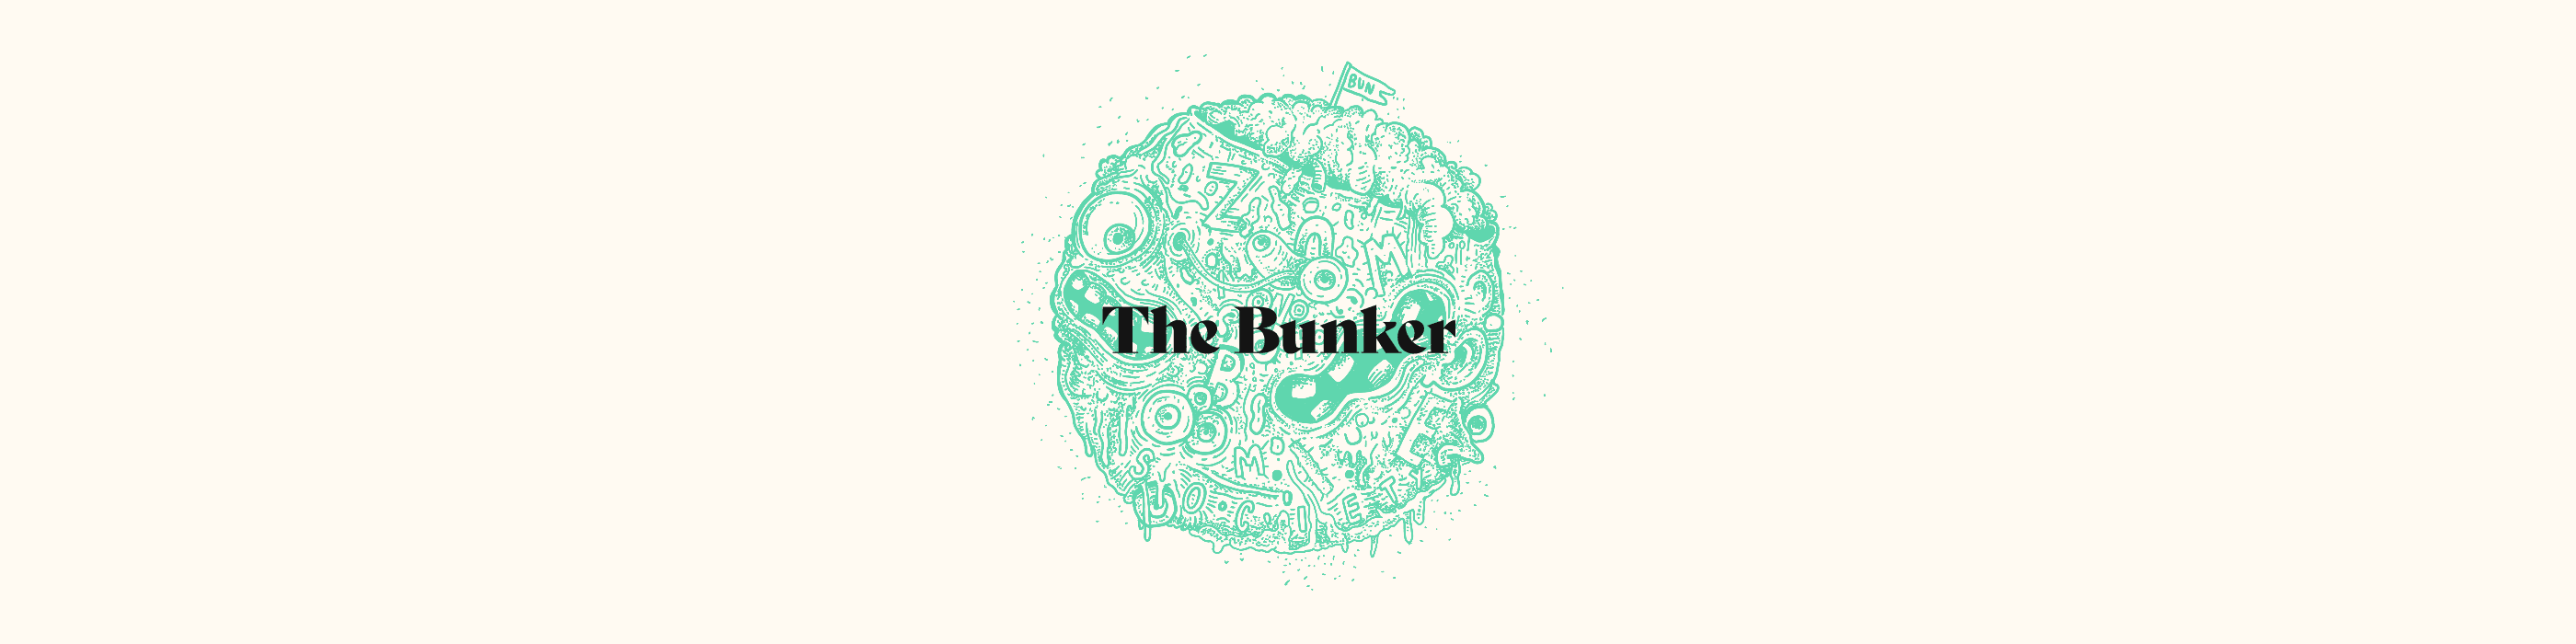 The_Bunker banner